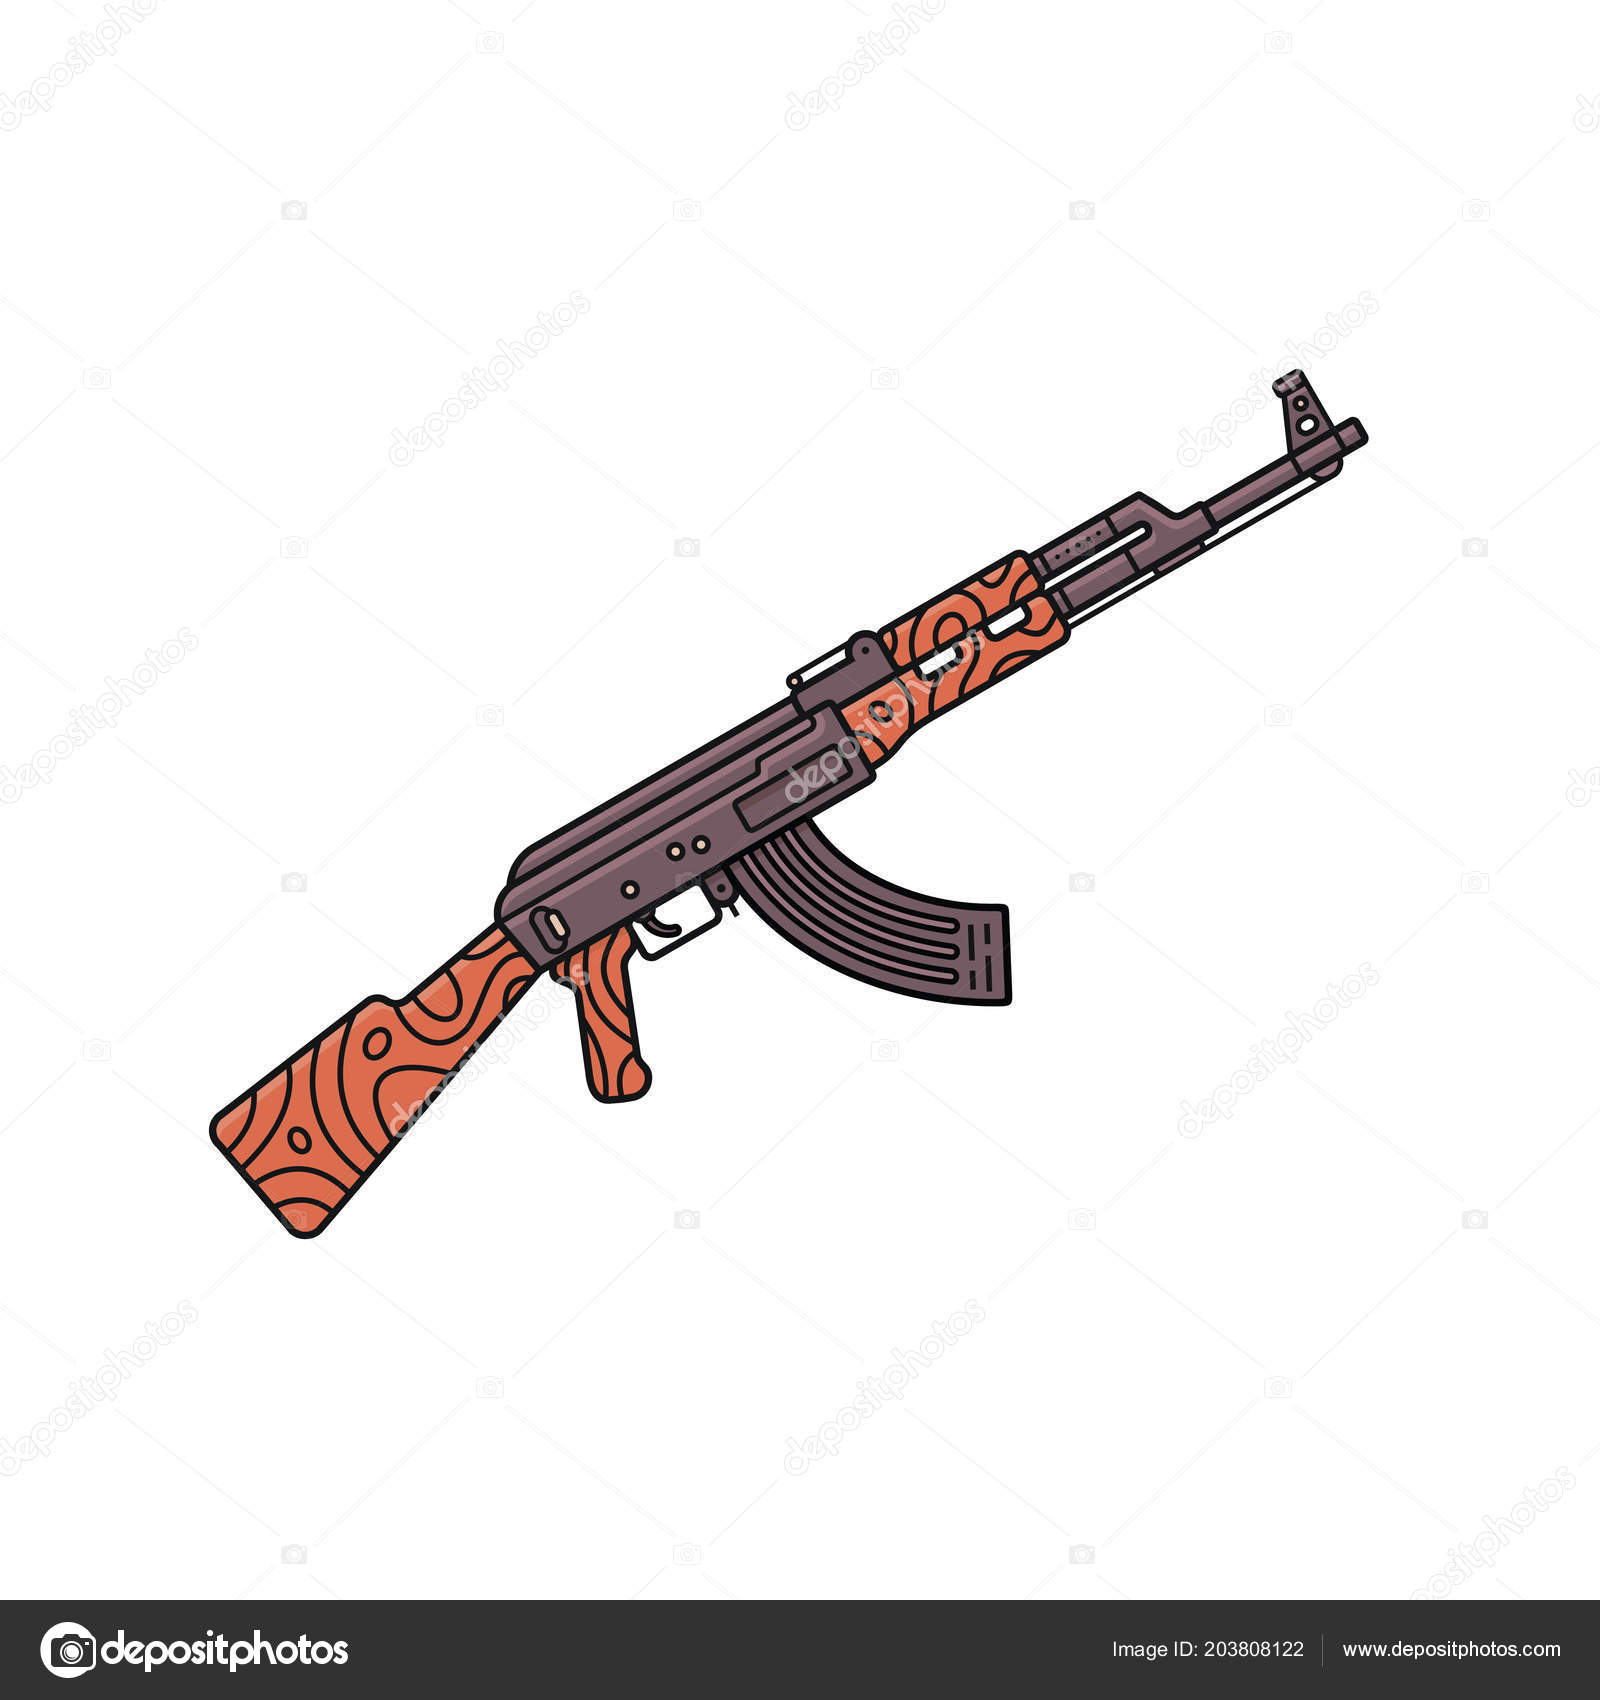 Russian assault rifle AK-47. 